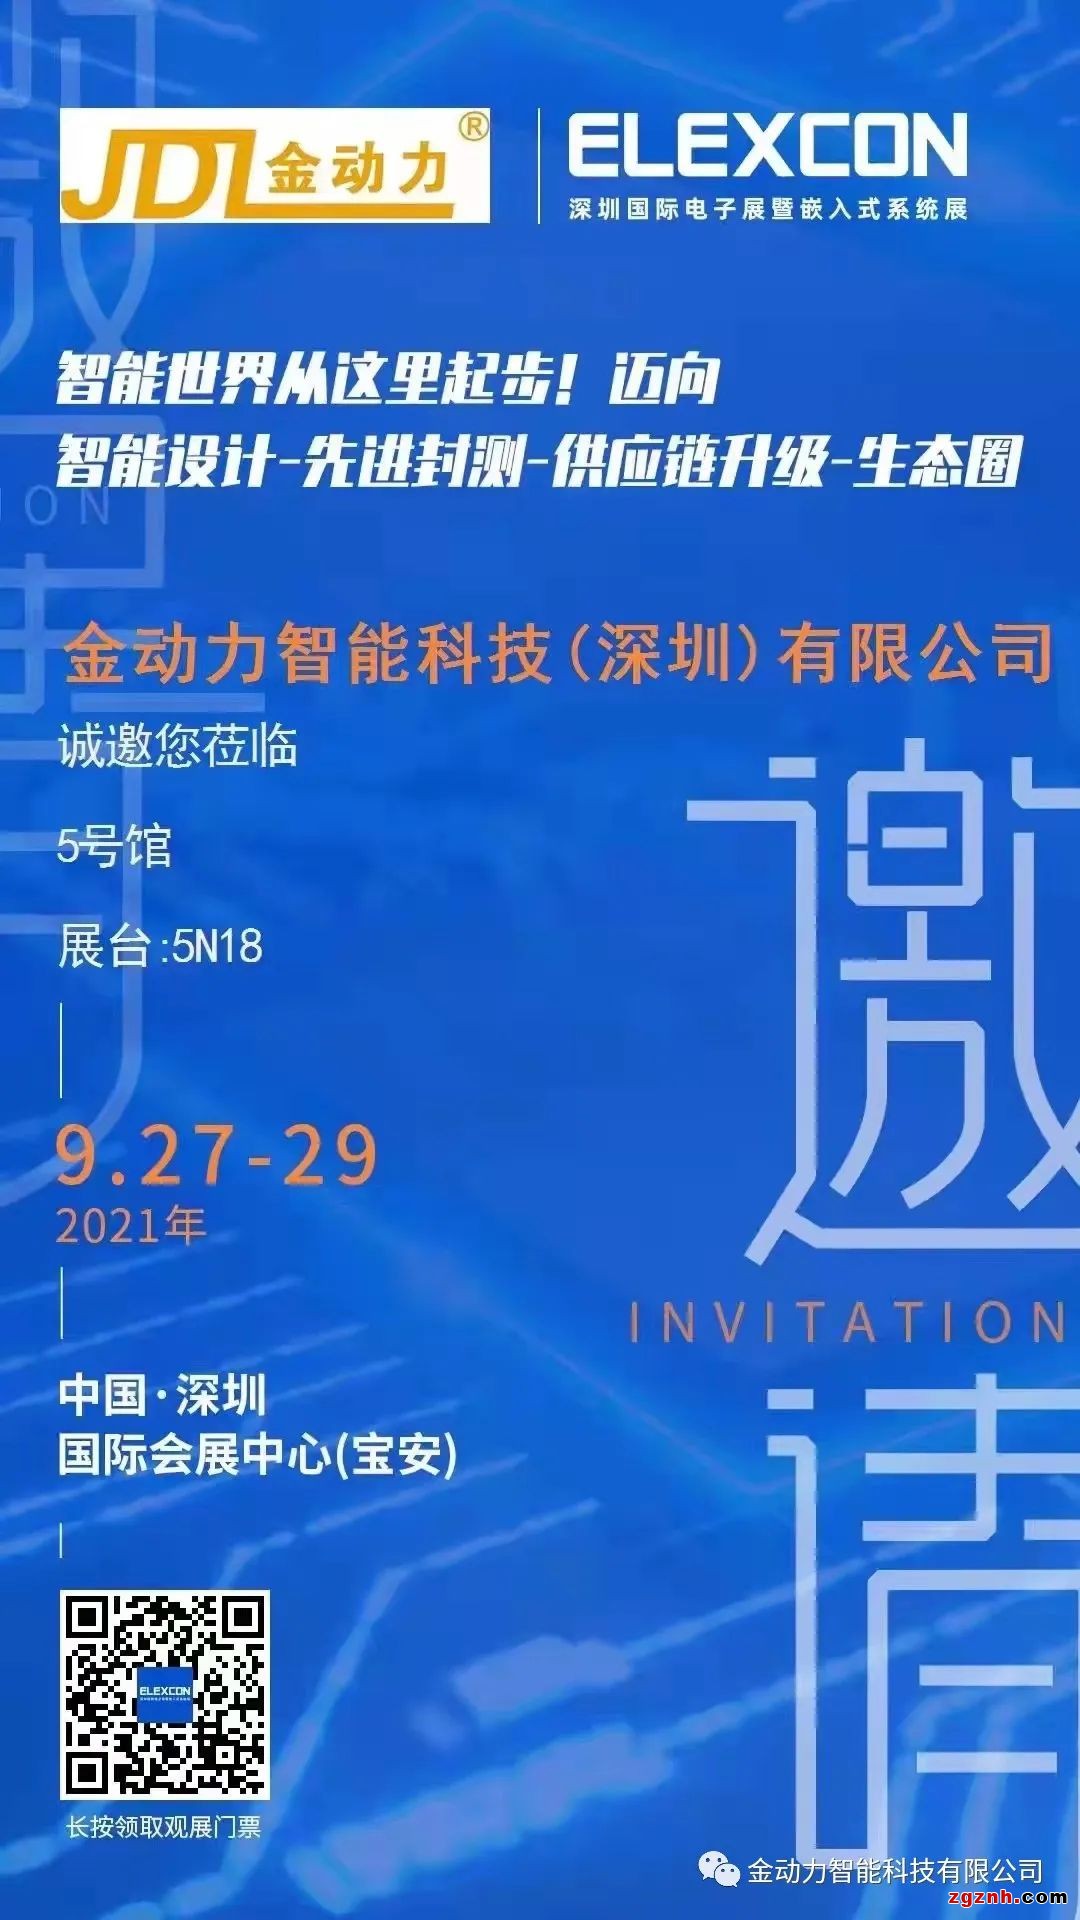 金动力智能邀您参观深圳国际电子展